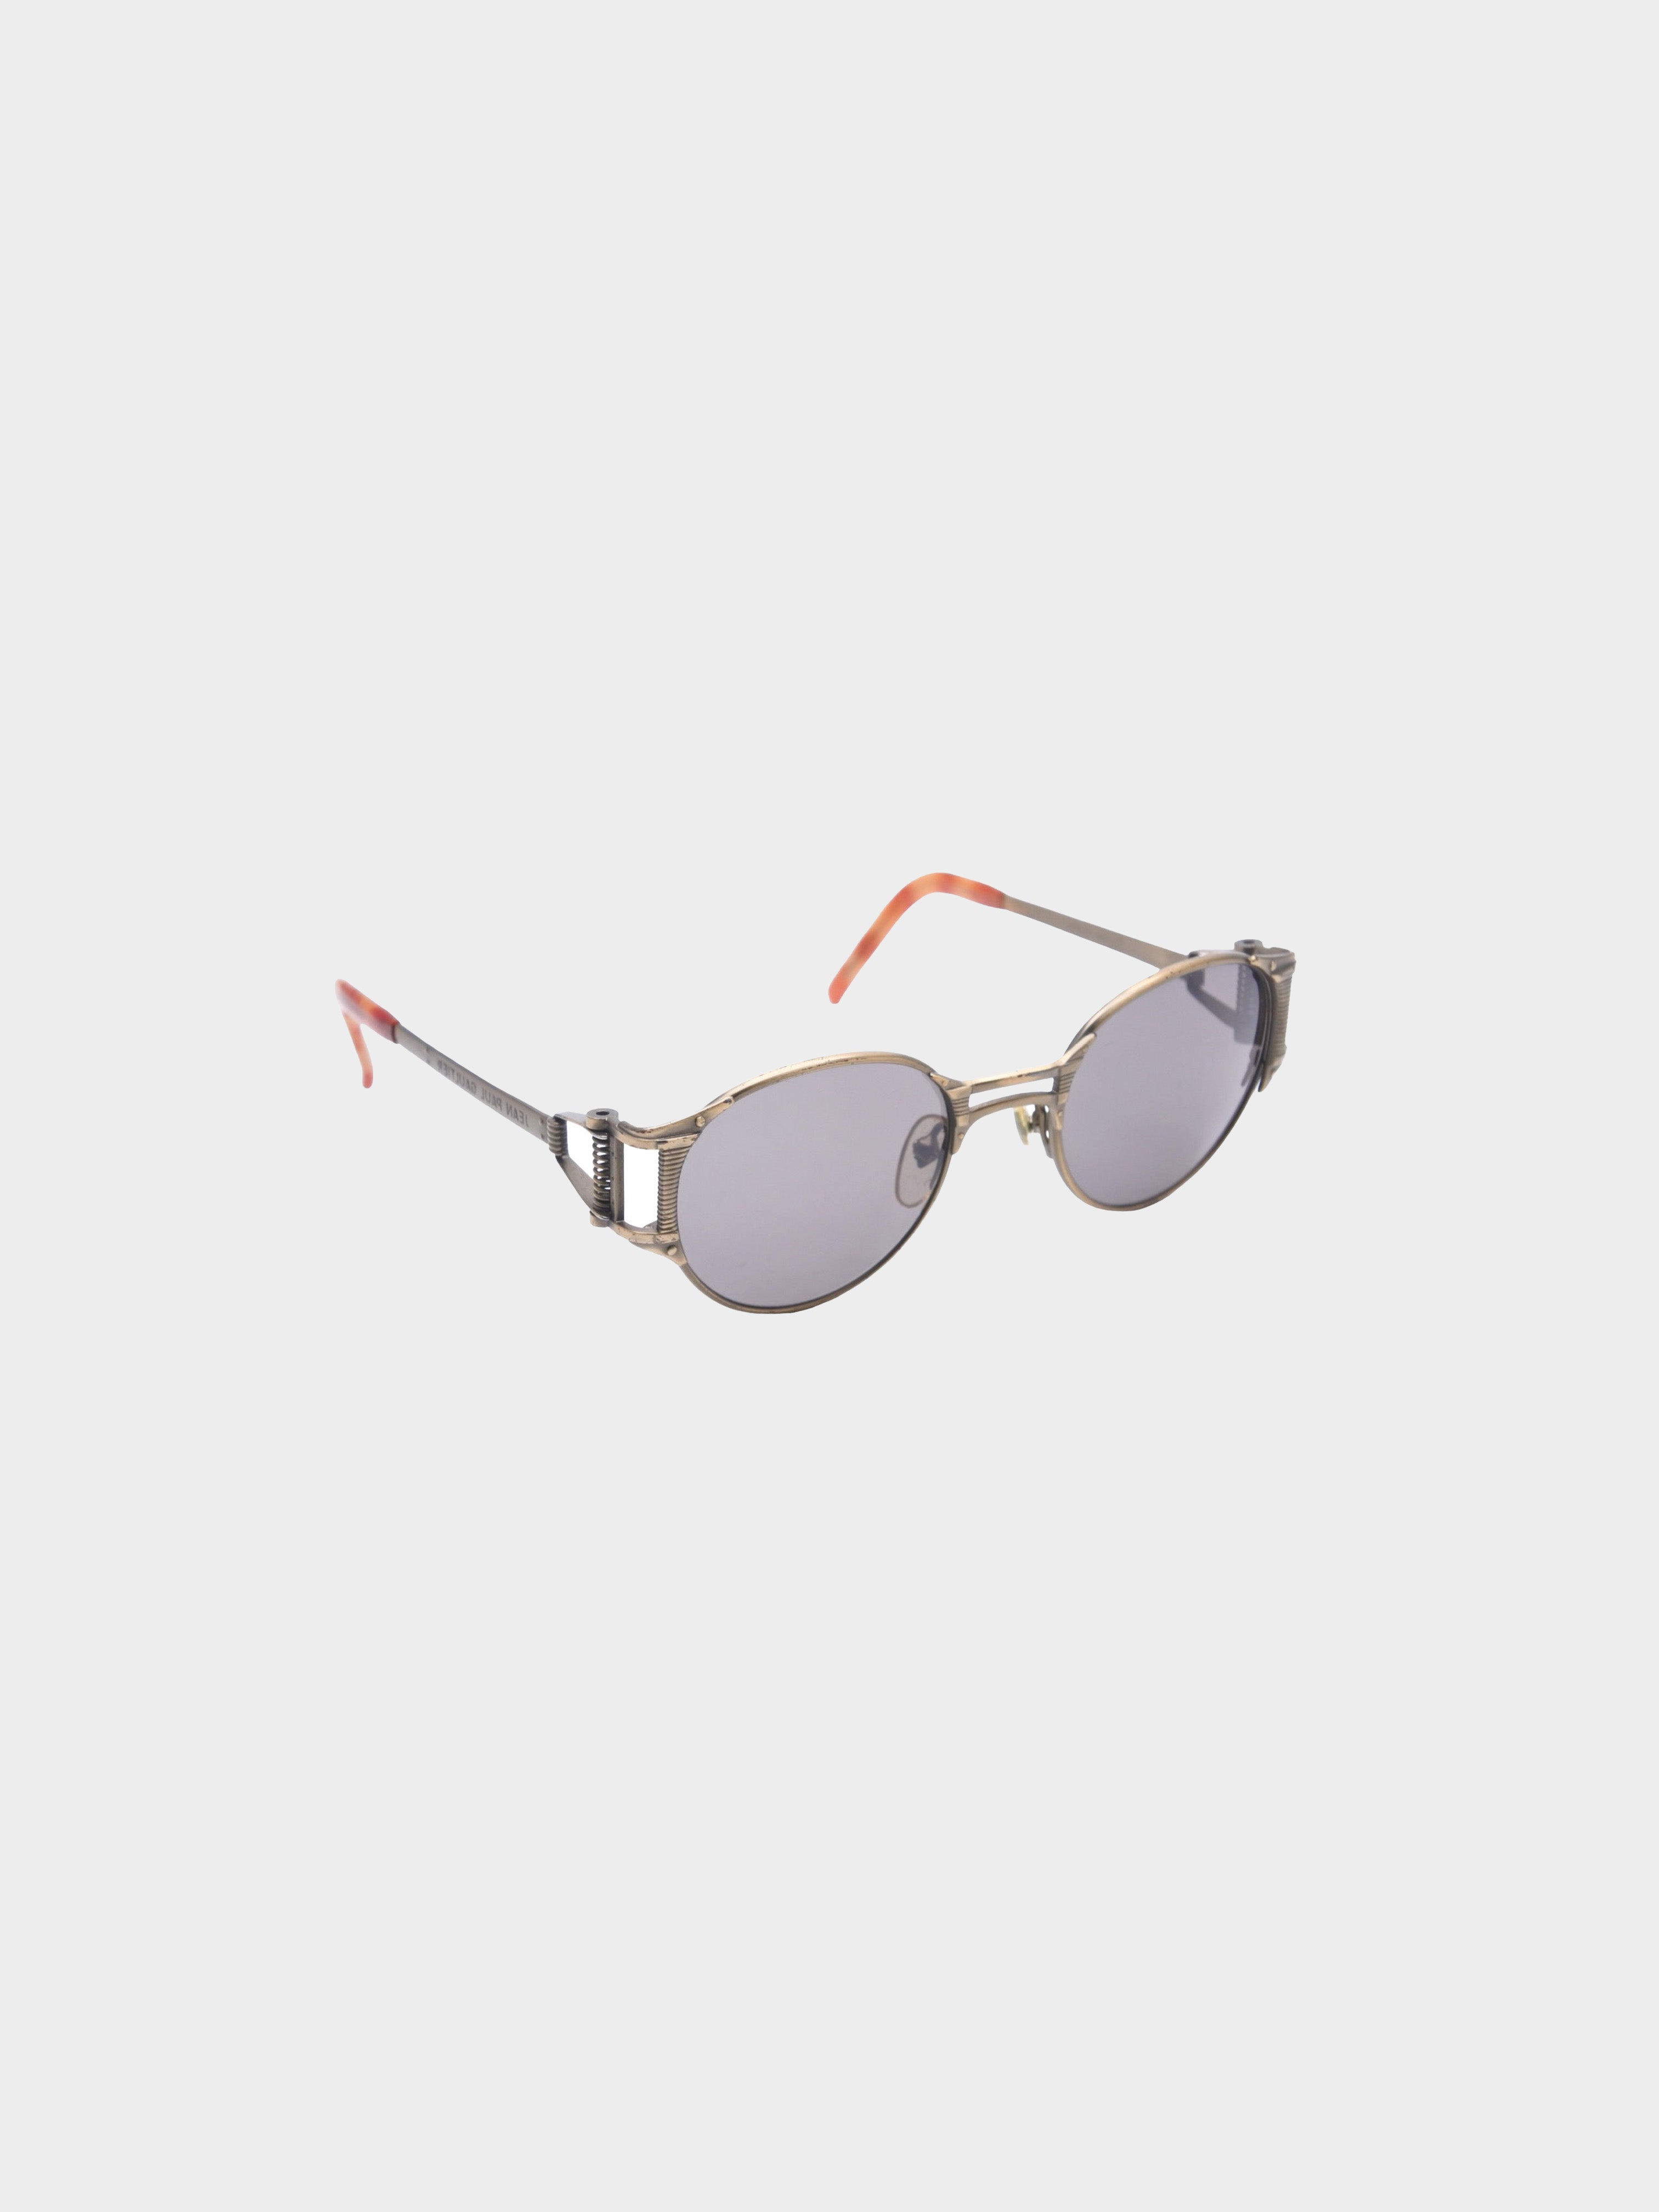 Jean Paul Gaultier 1990s Bronze Cutout Sunglasses